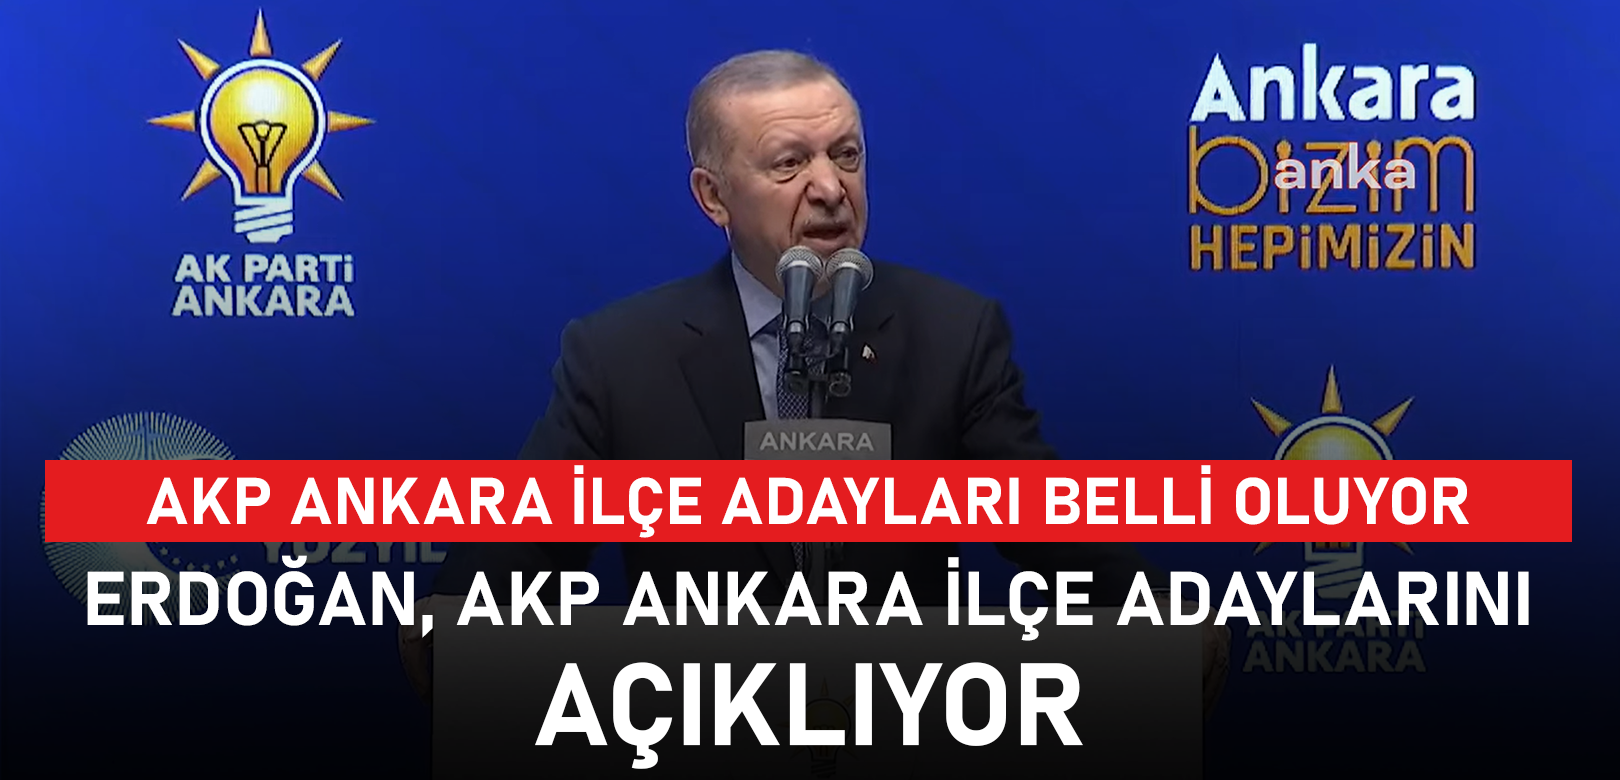 Erdoğan, AKP Ankara ilçe belediye başkan adaylarını açıkladı